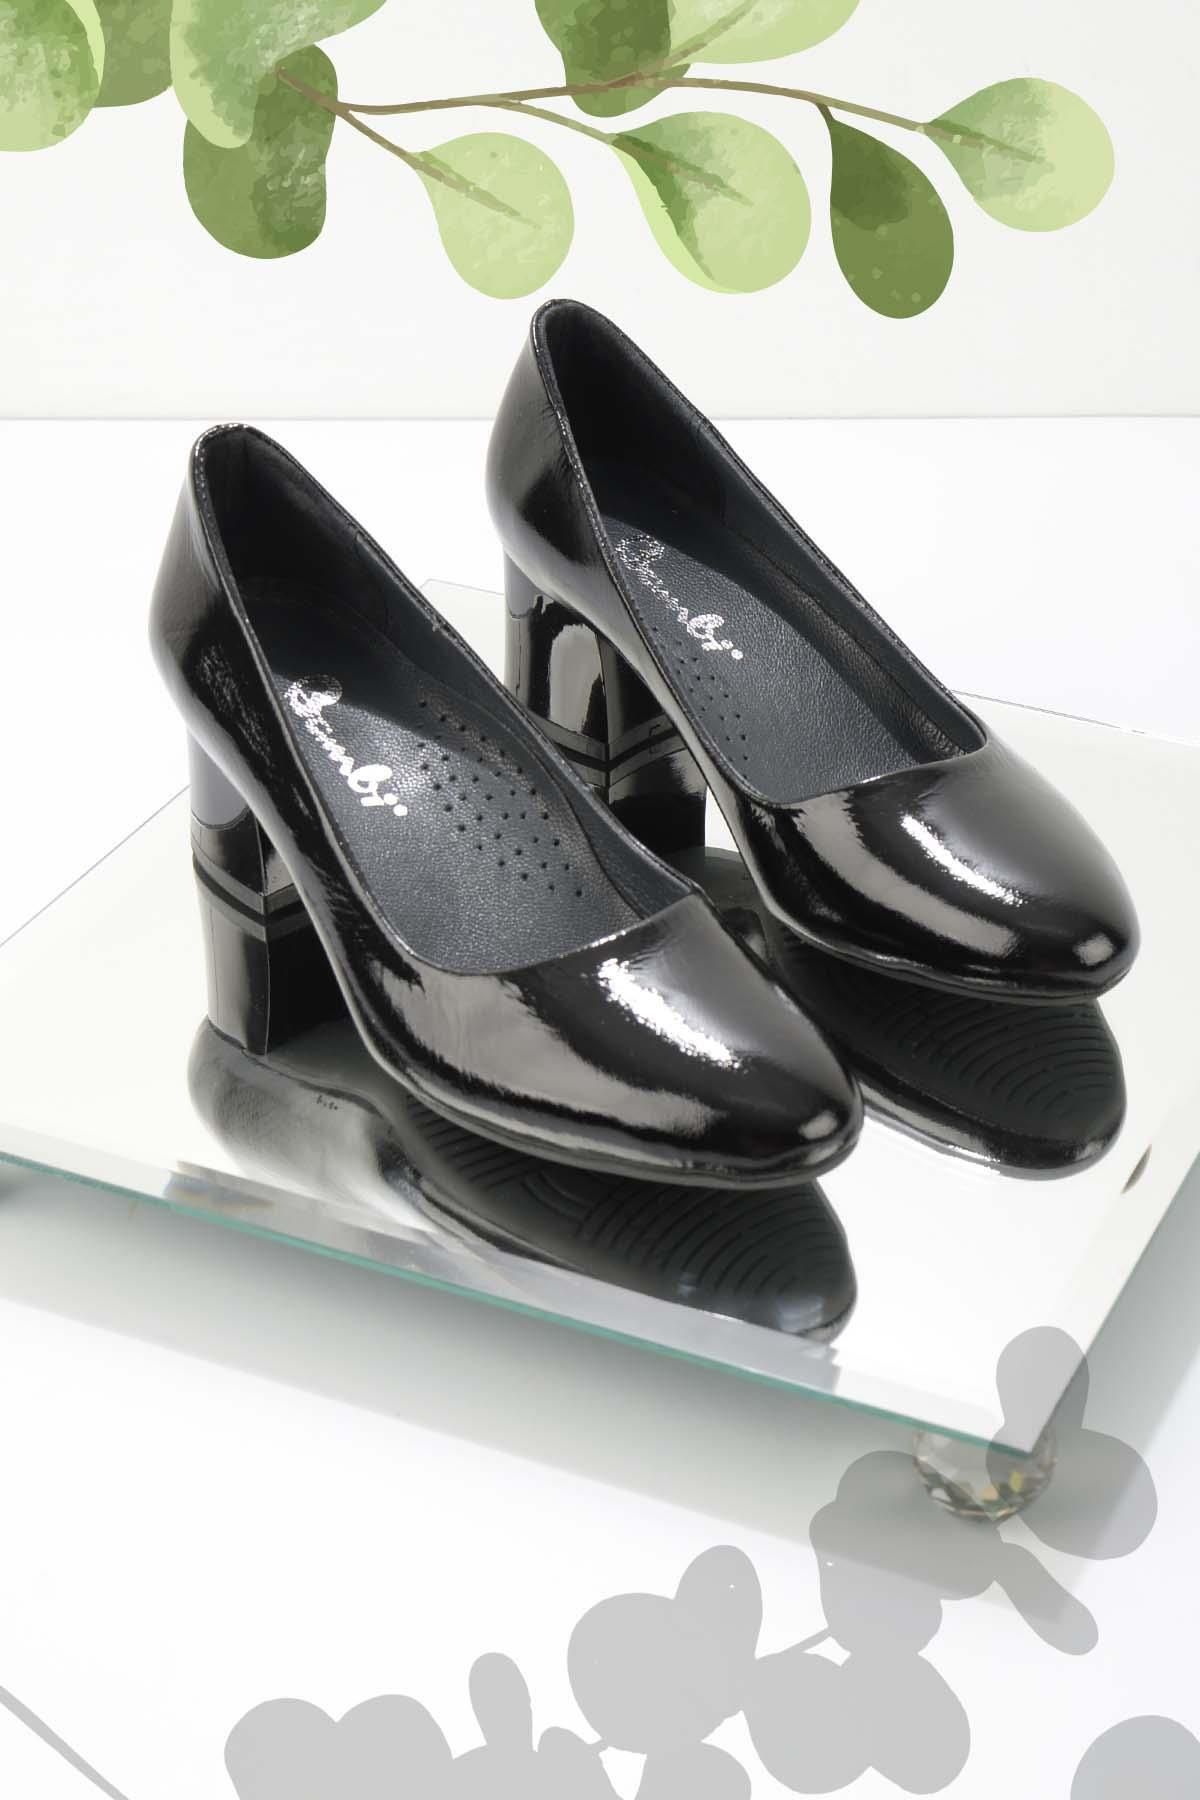 Bambi Siyah Rugan Hakiki Deri Kadın Klasik Topuklu Ayakkabı K01531190308